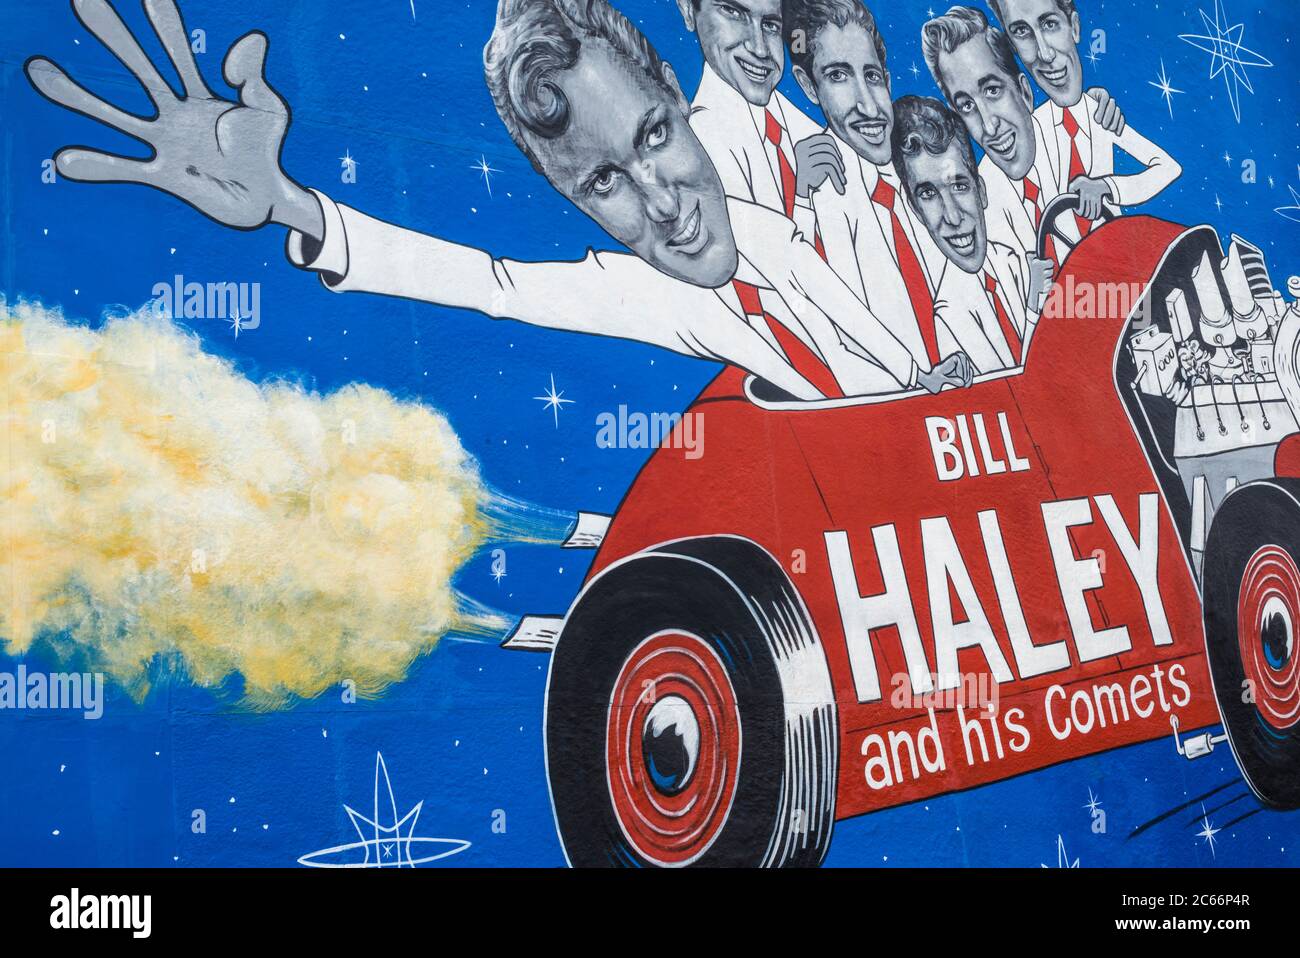 USA, New Jersey, Jersey Shore, Wildwoods, 1950er Jahre 1960er Jahre Rock und Roll Geschichte, Wandbild für Bill Haley und seinen Comets Stockfoto